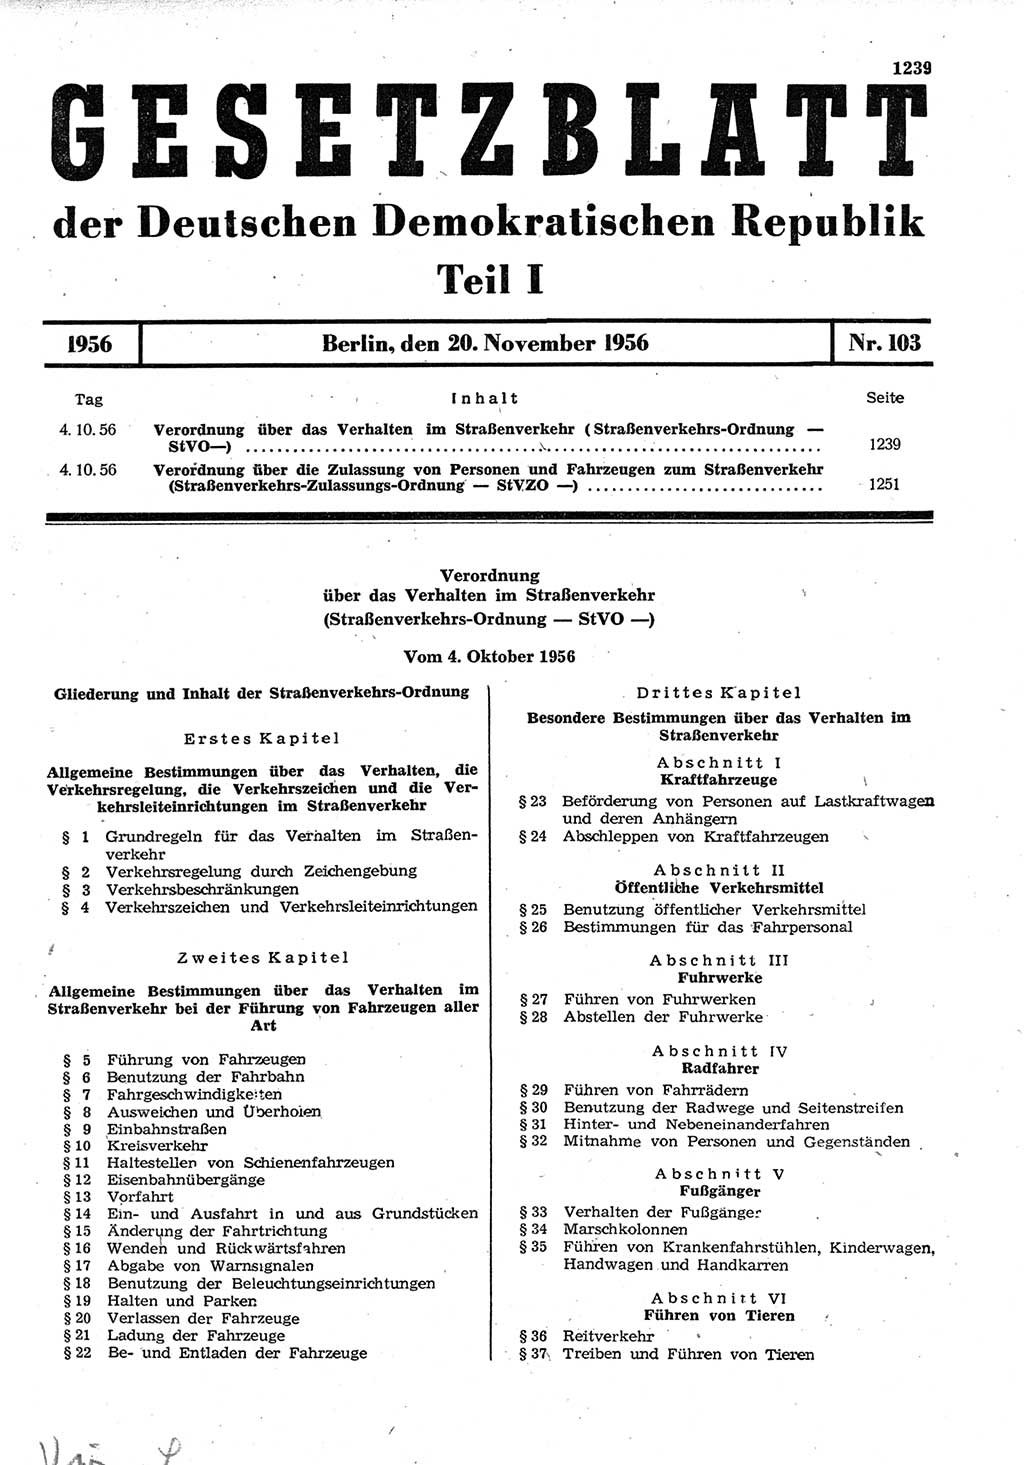 Gesetzblatt (GBl.) der Deutschen Demokratischen Republik (DDR) Teil Ⅰ 1956, Seite 1239 (GBl. DDR Ⅰ 1956, S. 1239)